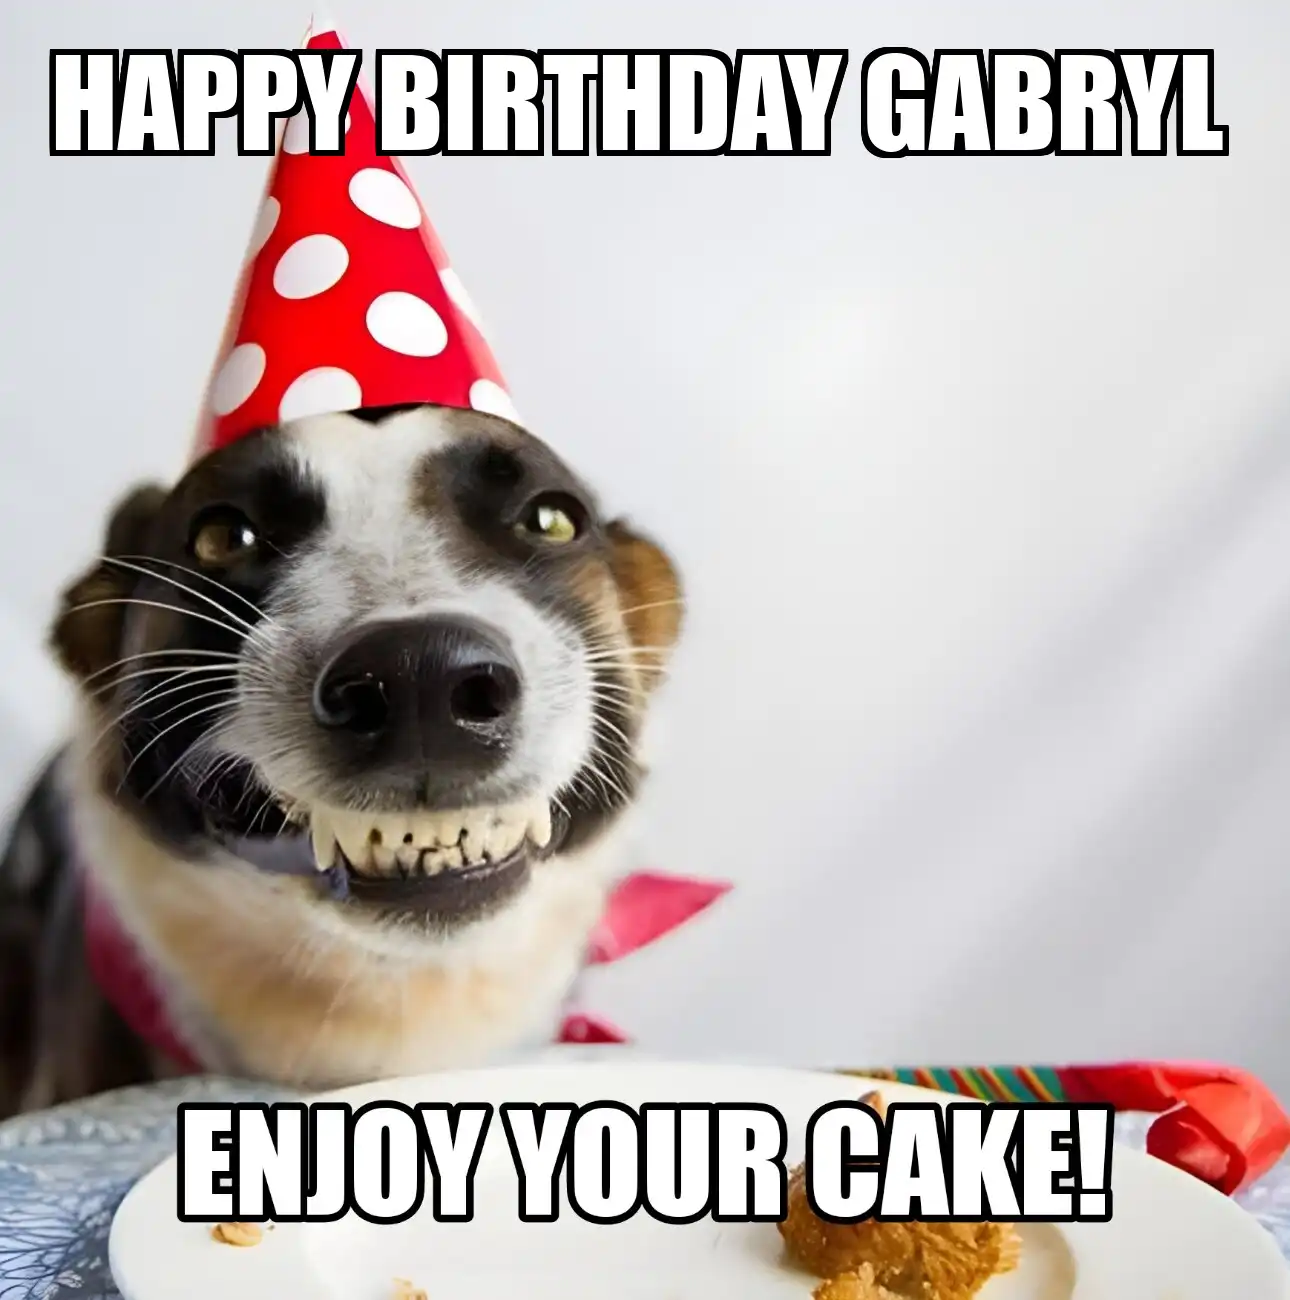 Happy Birthday Gabryl Enjoy Your Cake Dog Meme